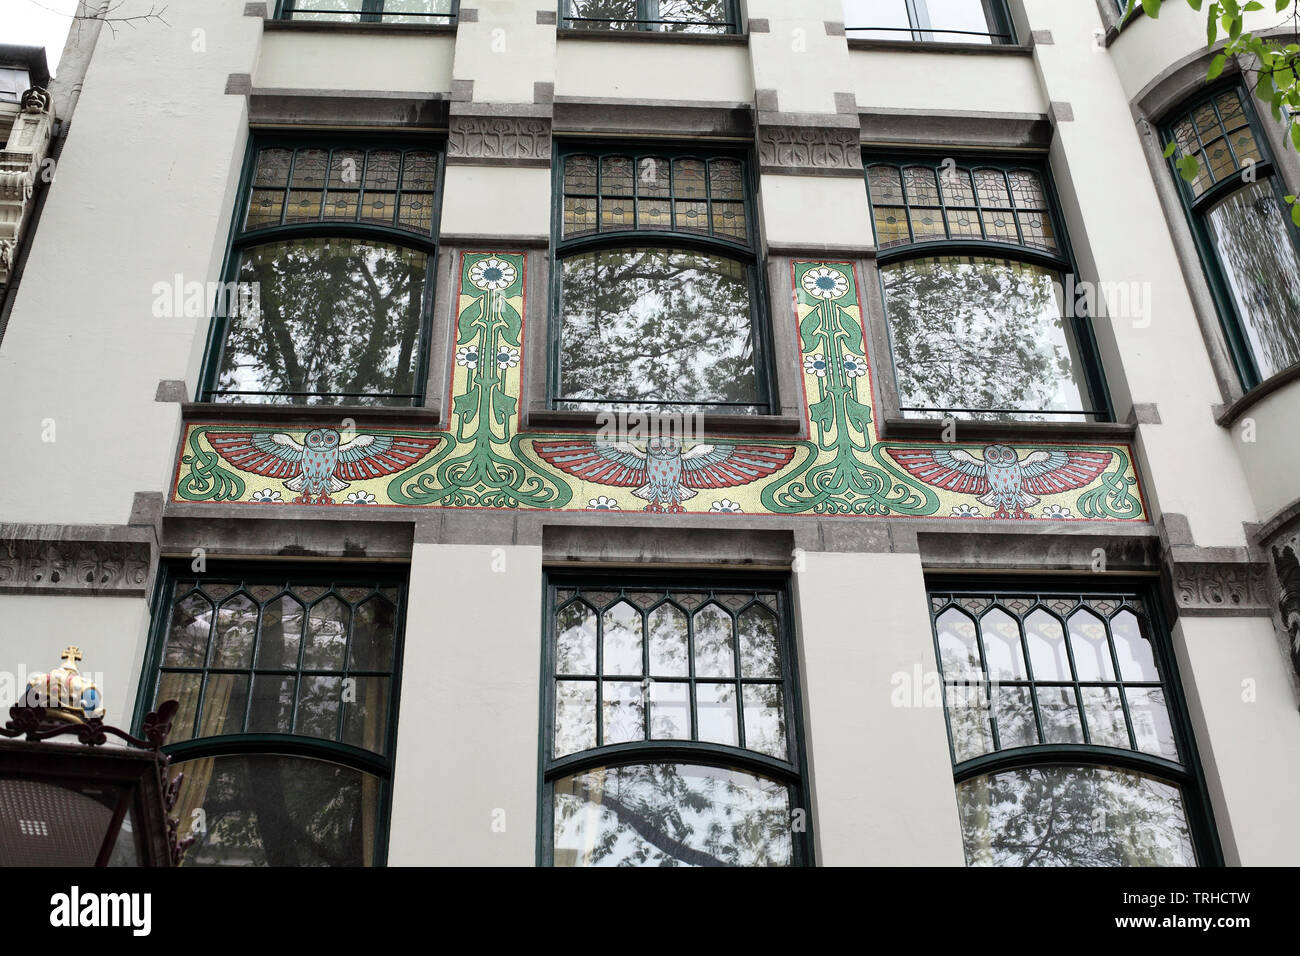 An Art Nouveau mosaic decorates a building on Spui, Amsterdam. Stock Photo